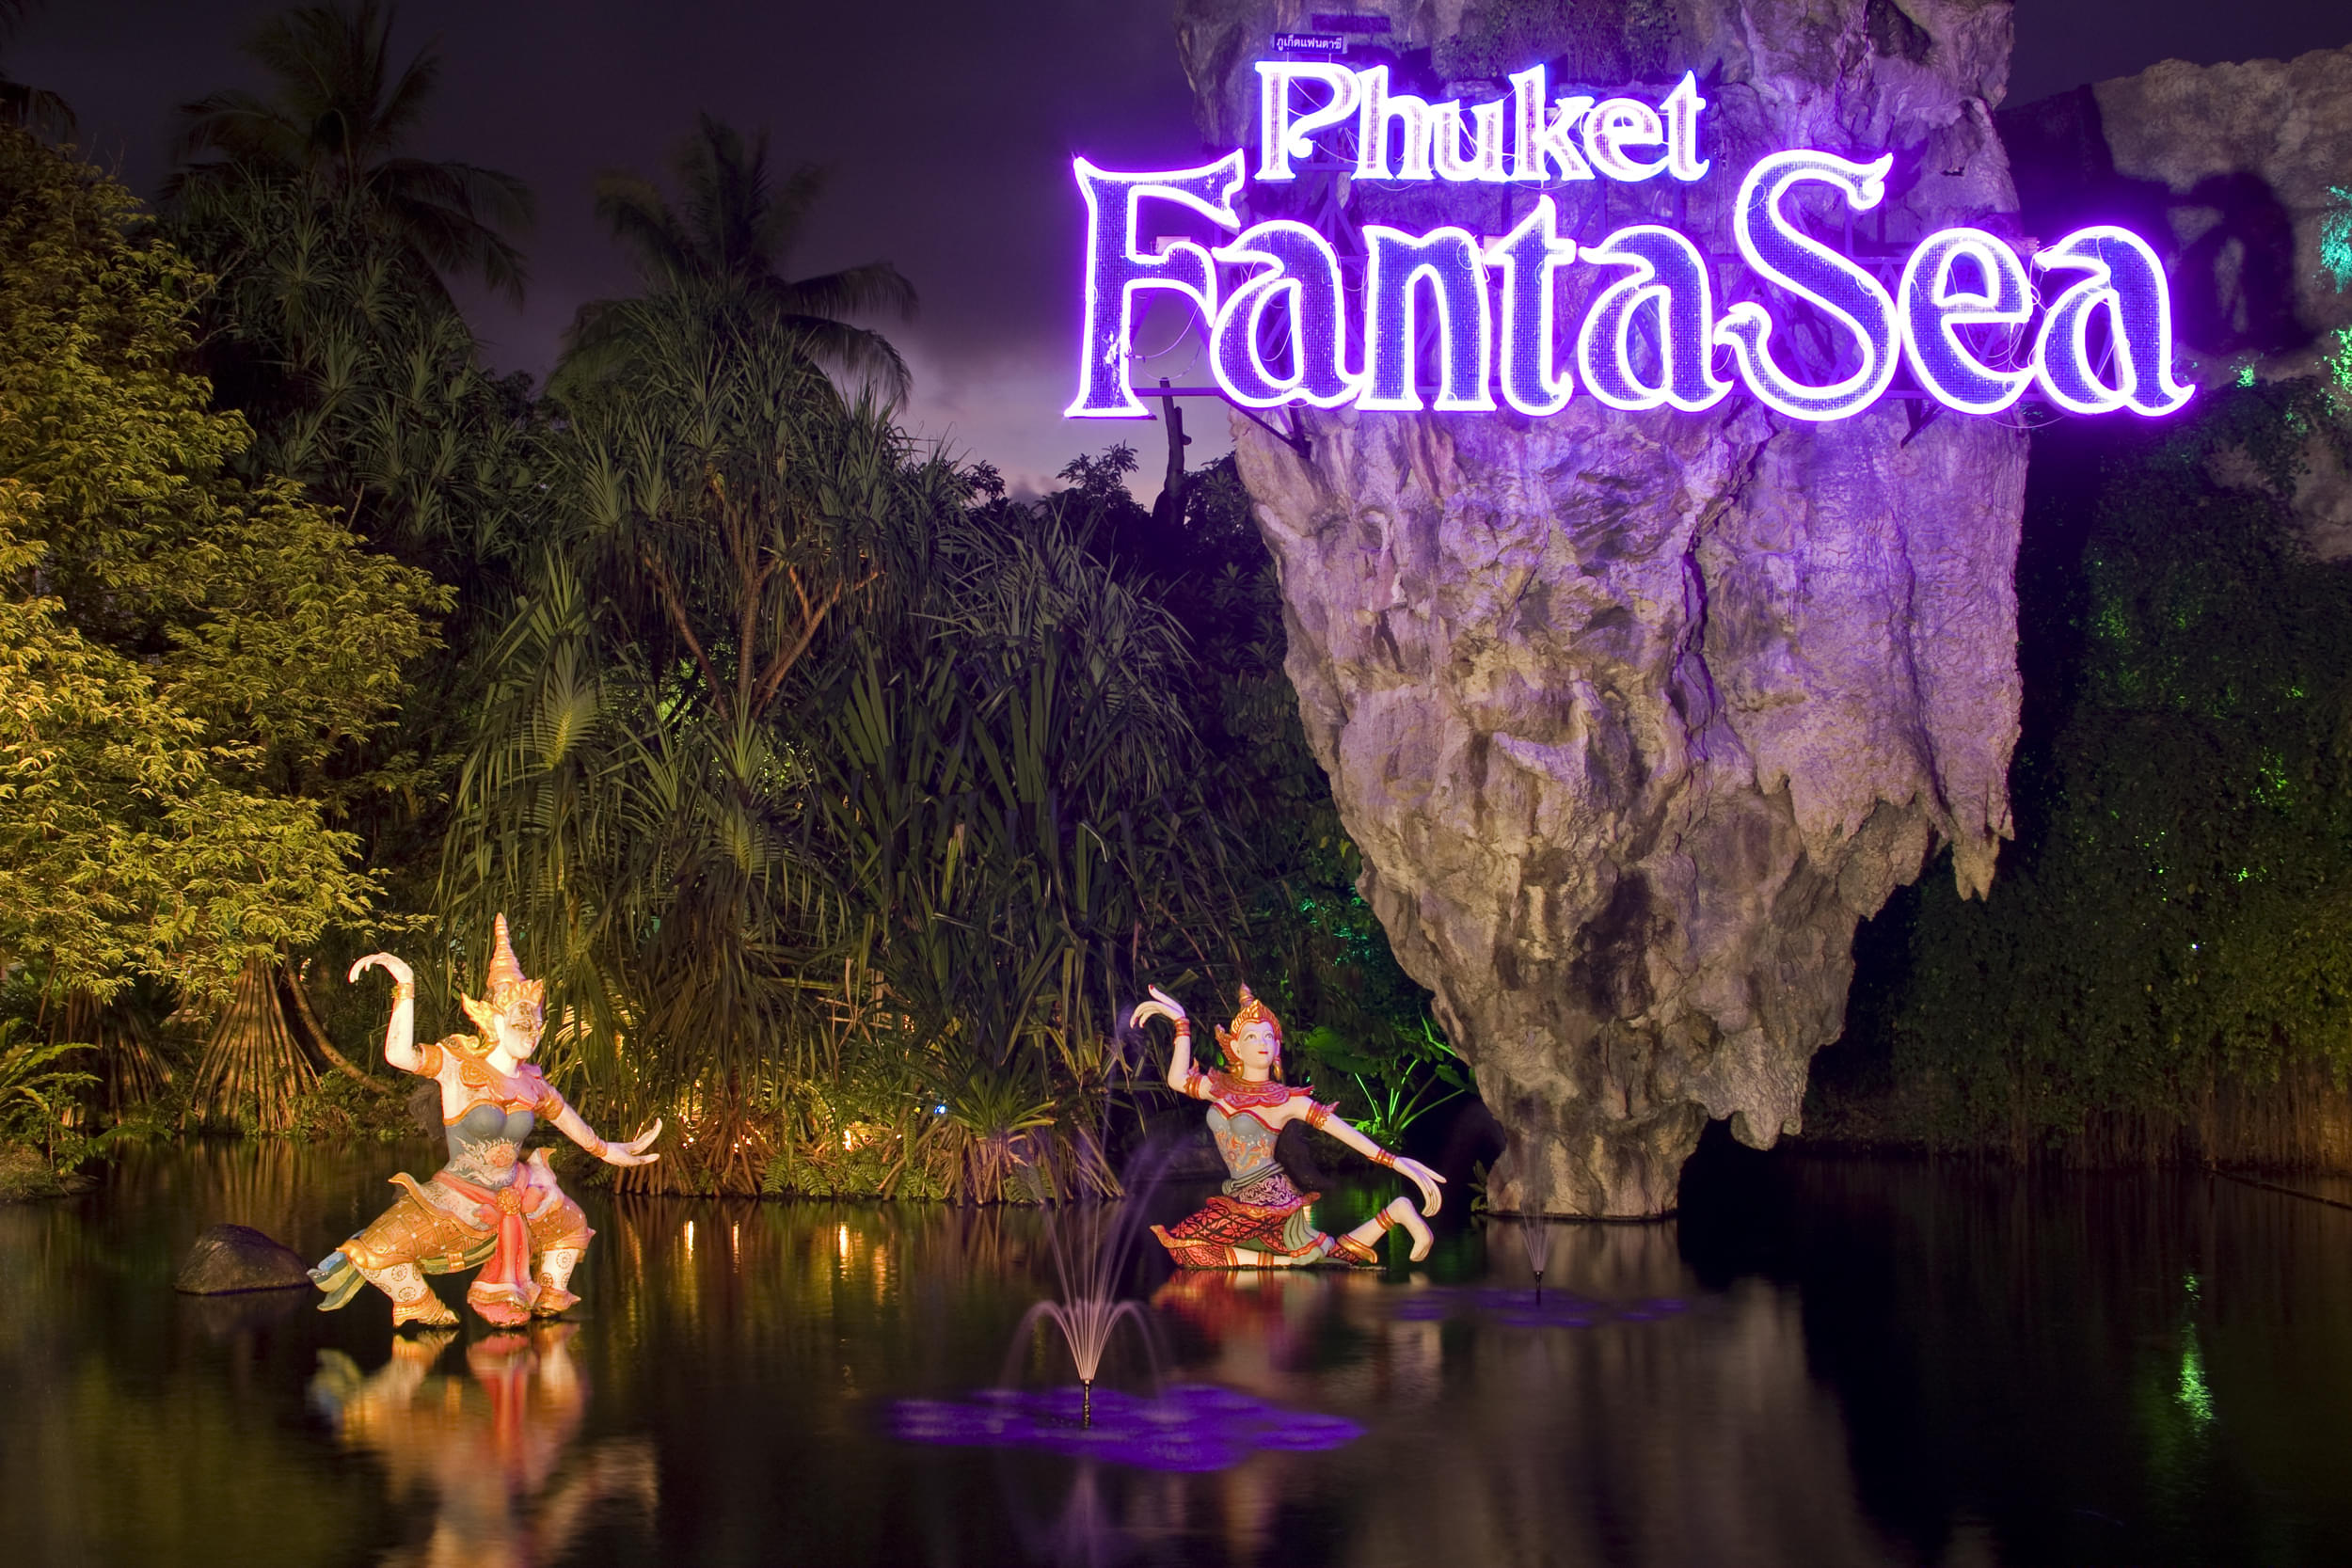 Phuket Fanta Sea Overview